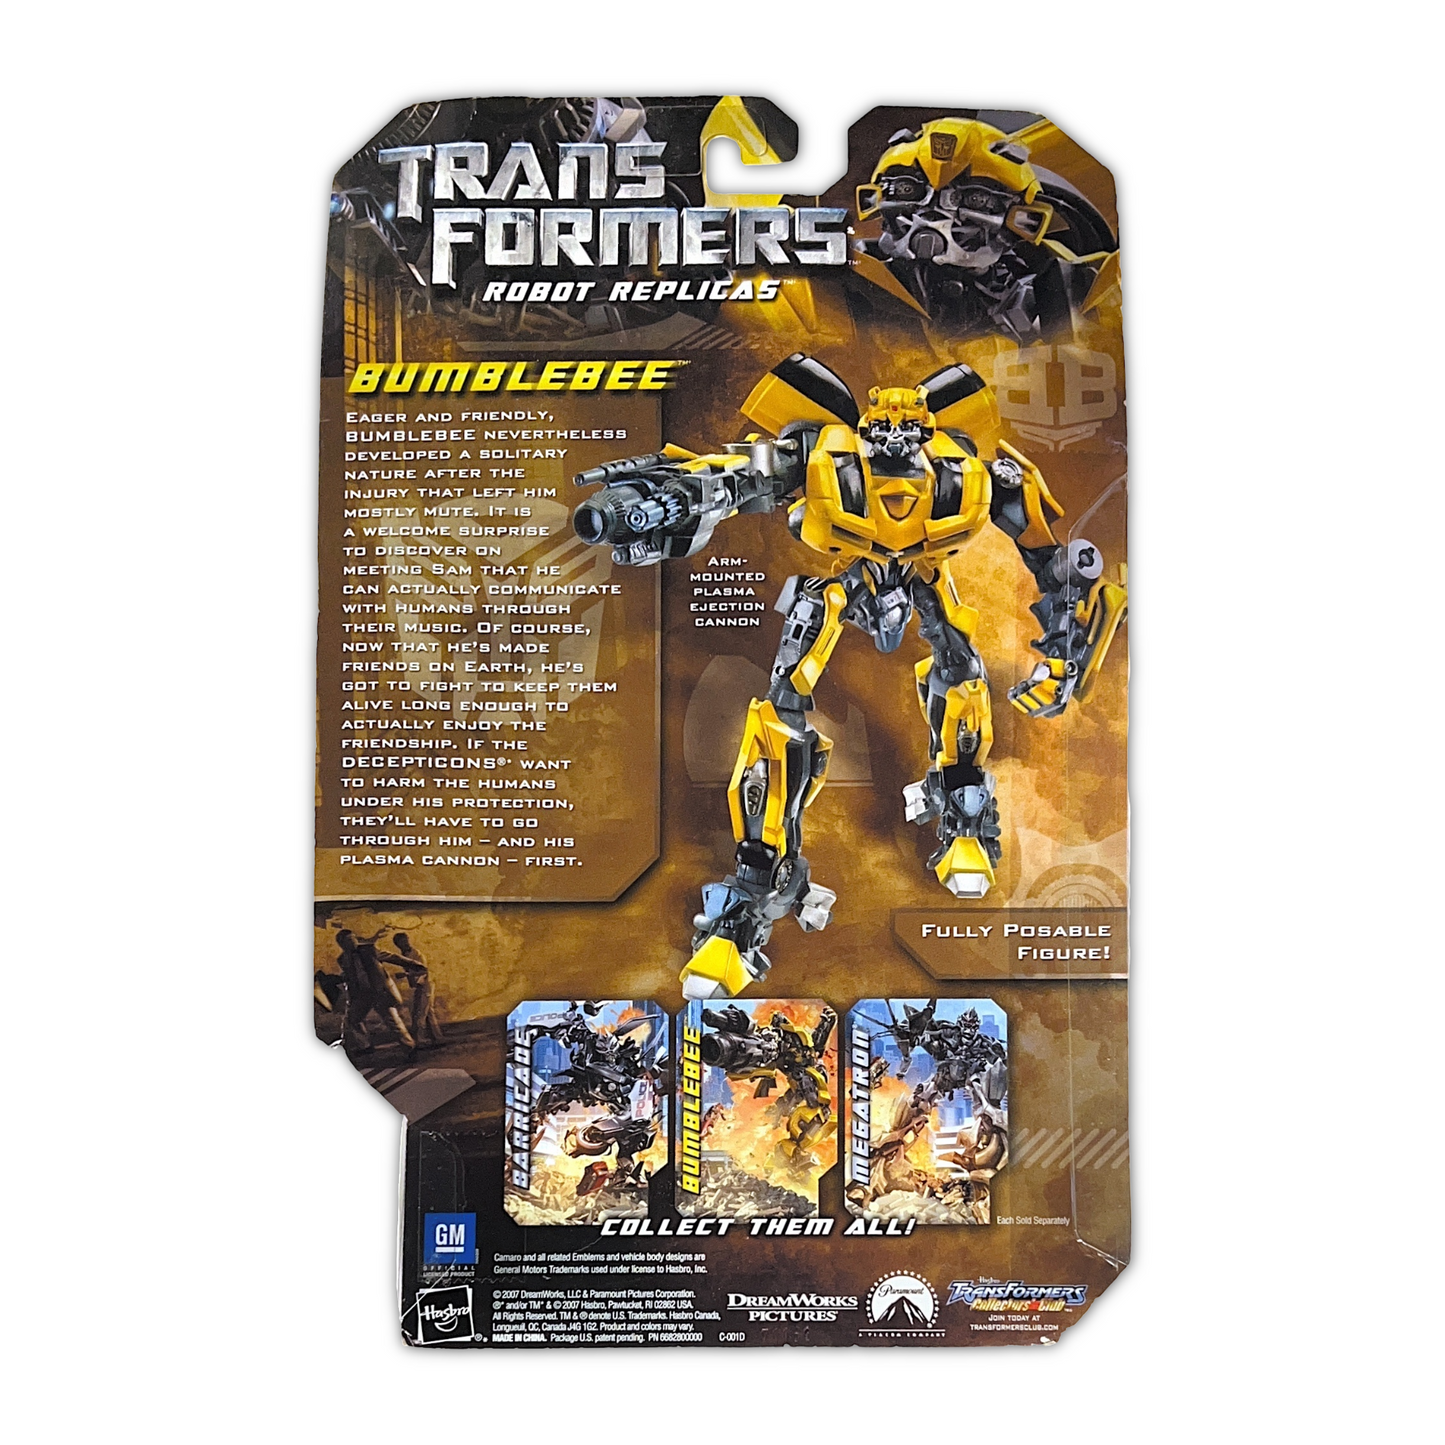 2007 Hasbro Transformers Bumblebee Robot Replicas Posable Figure